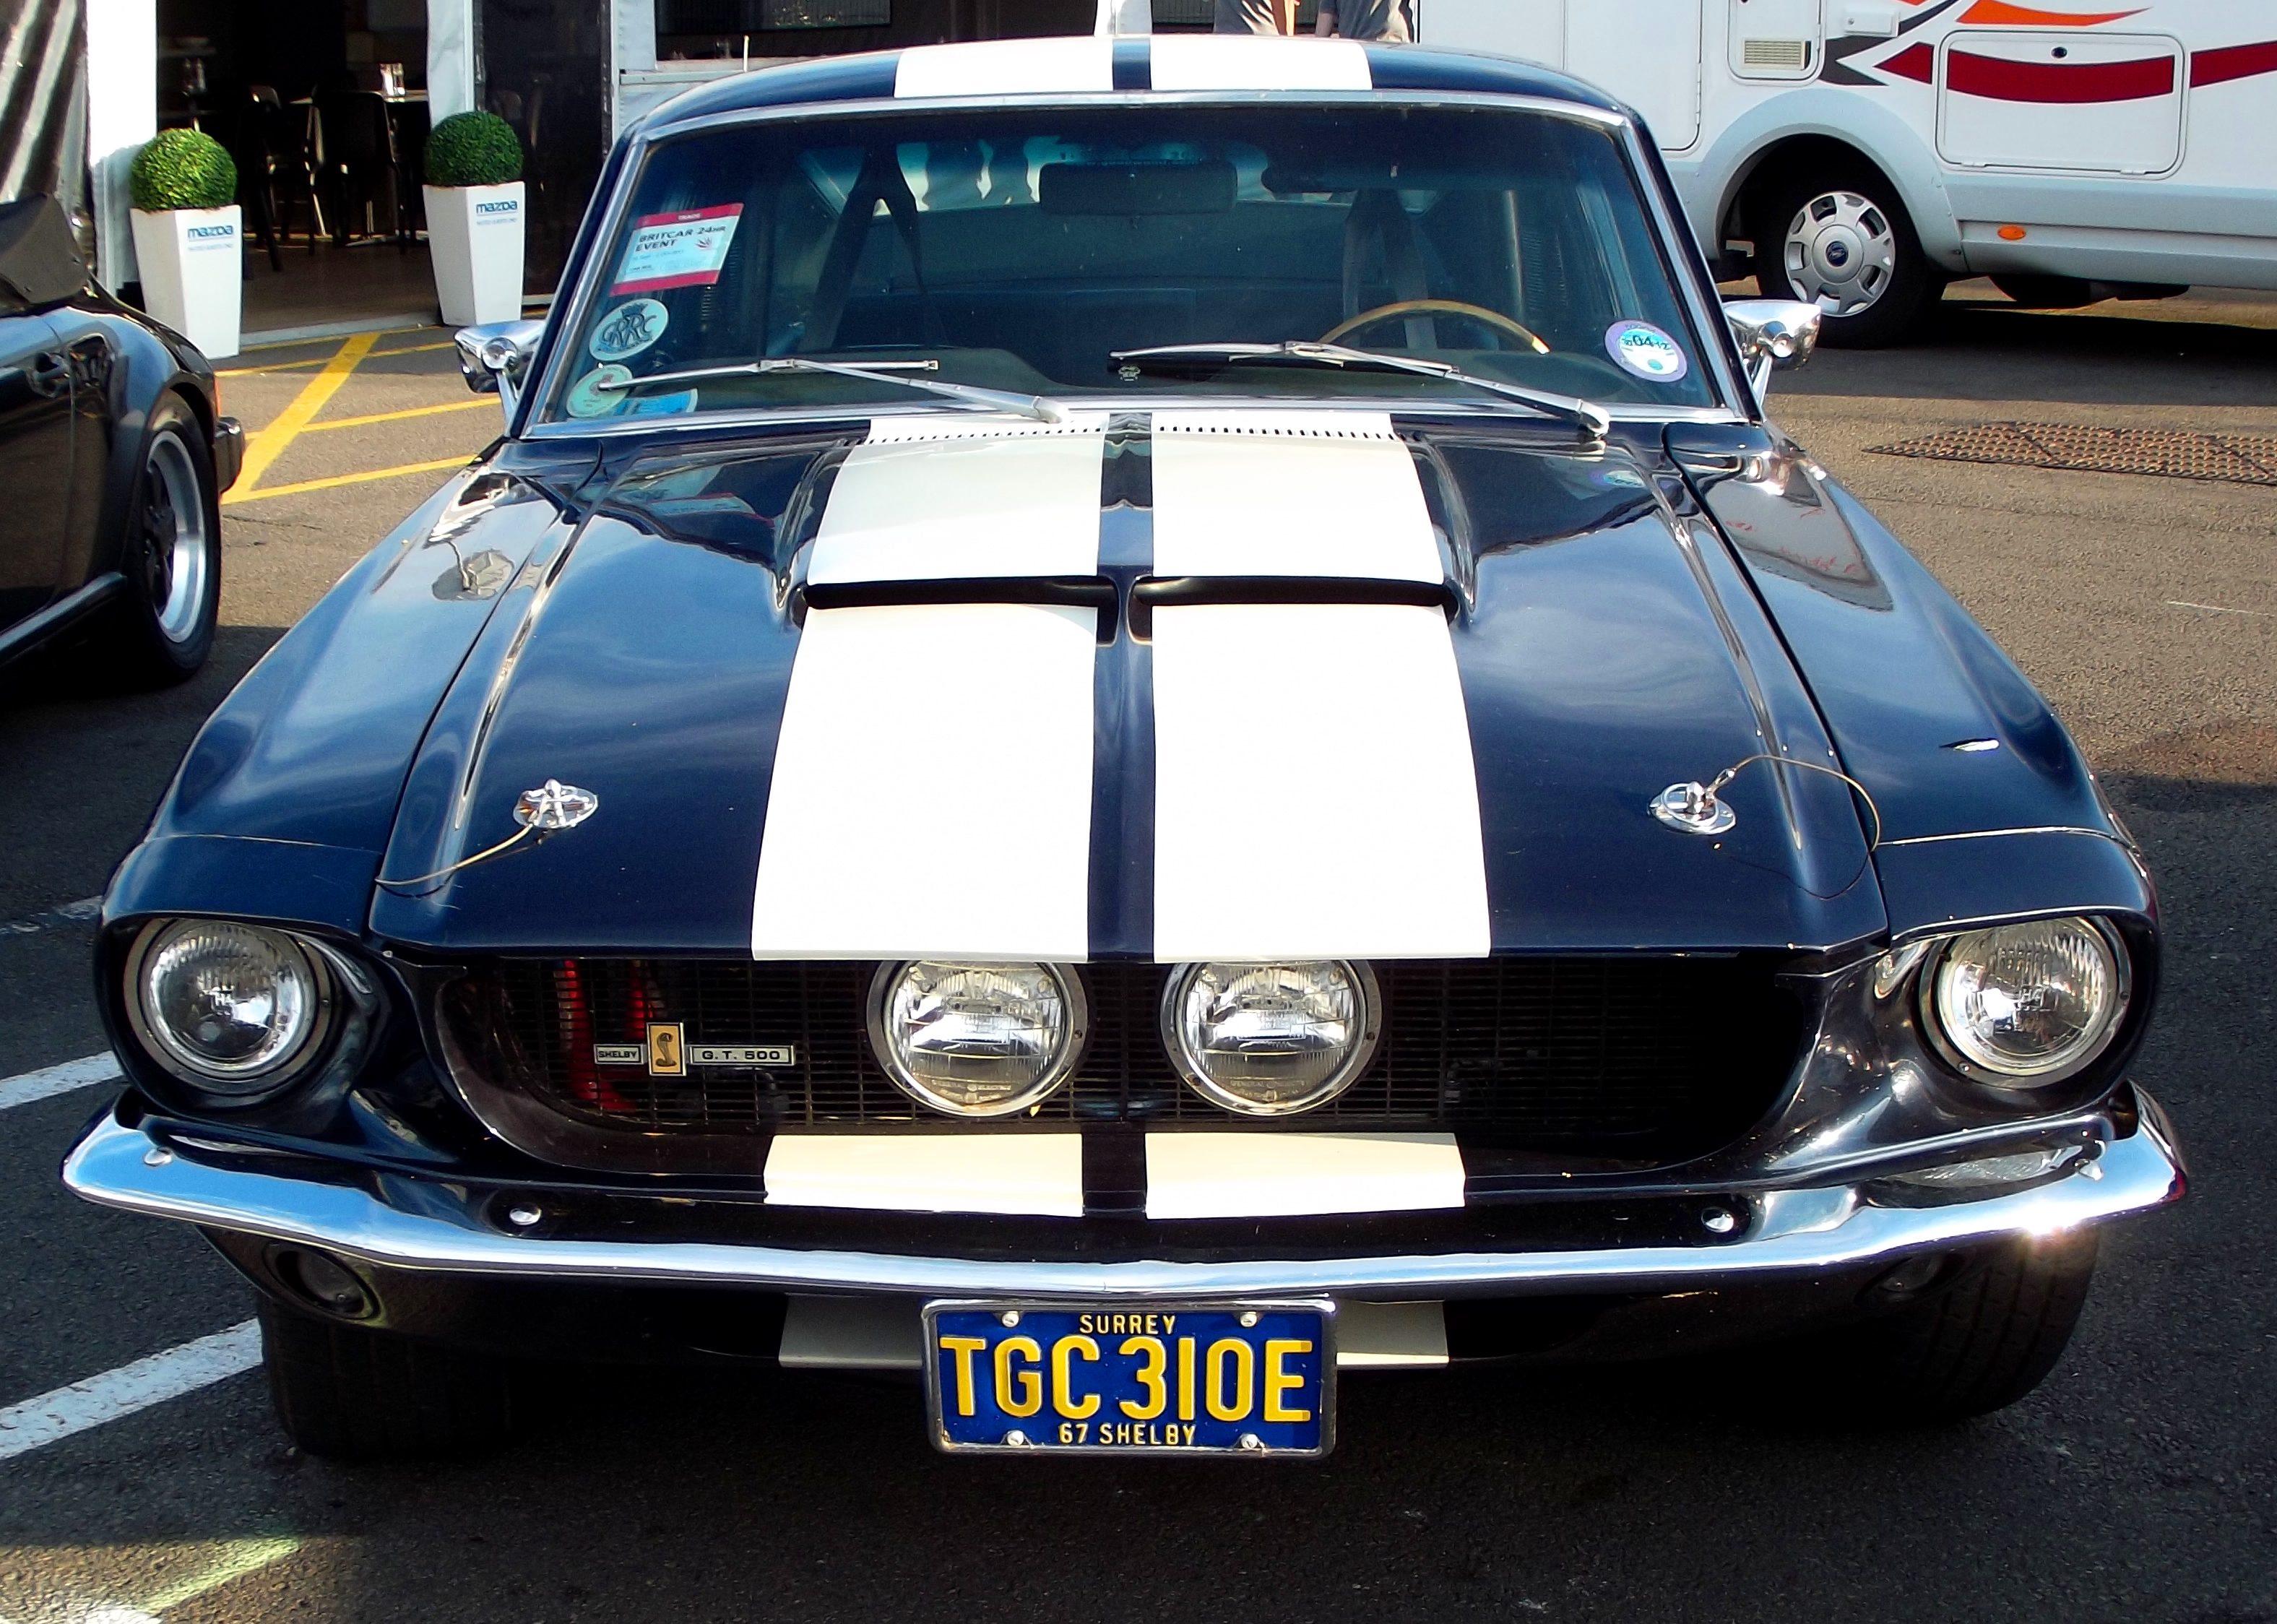 1967 Shelby Cobra GT 500 Mustang / Flickr - Partage de photos!